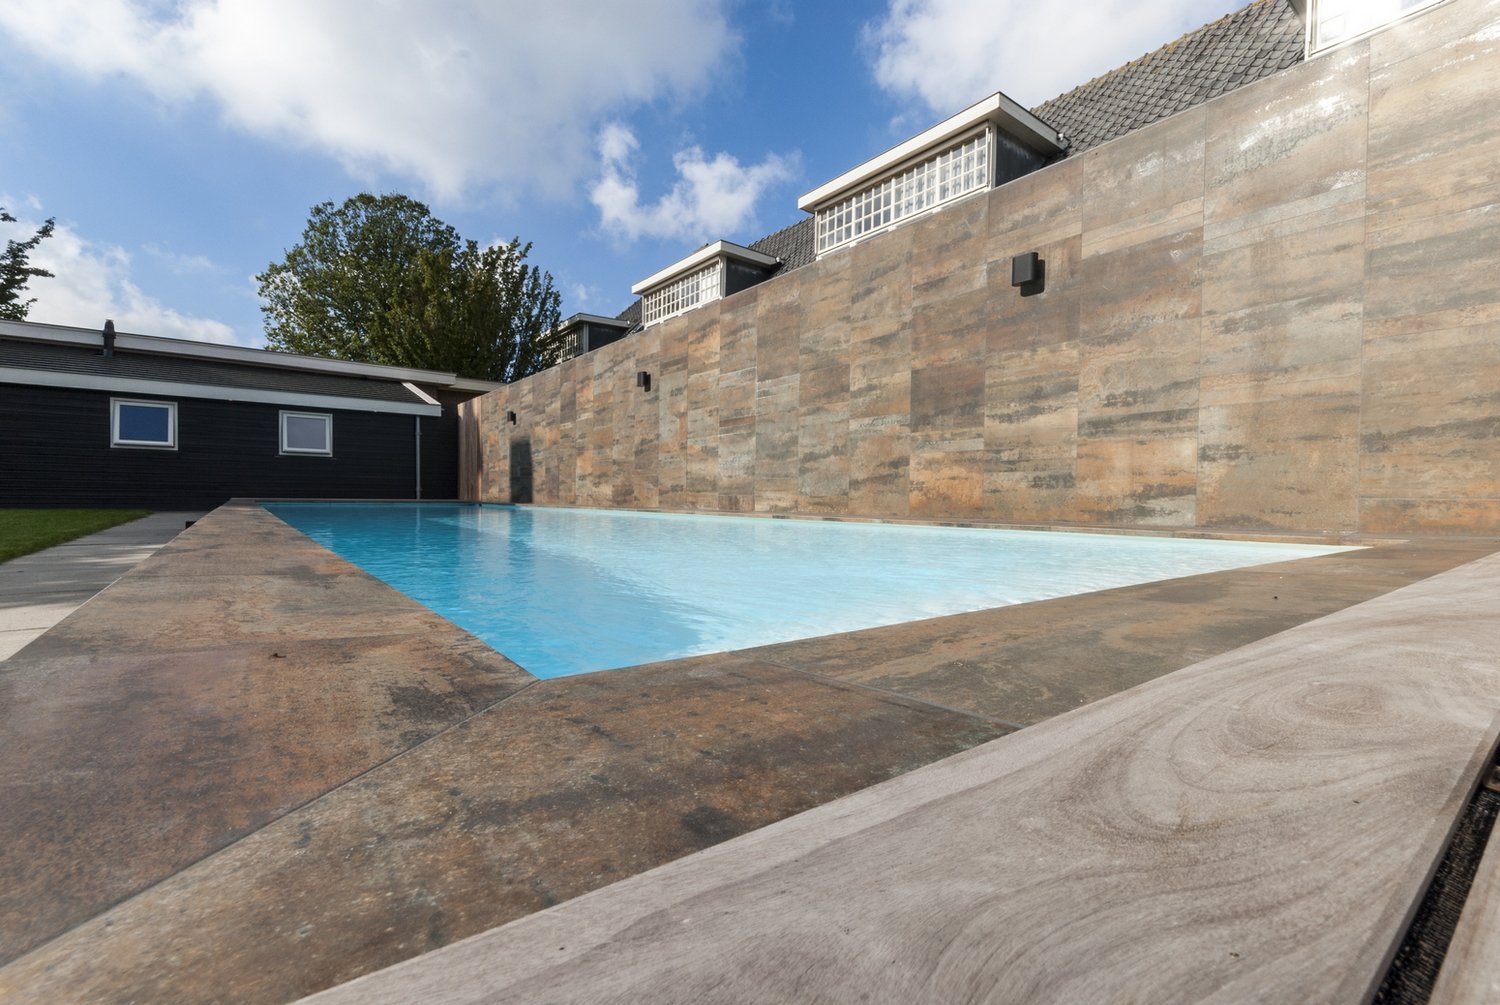 Maatwerk Welson pool in architectonische tuin